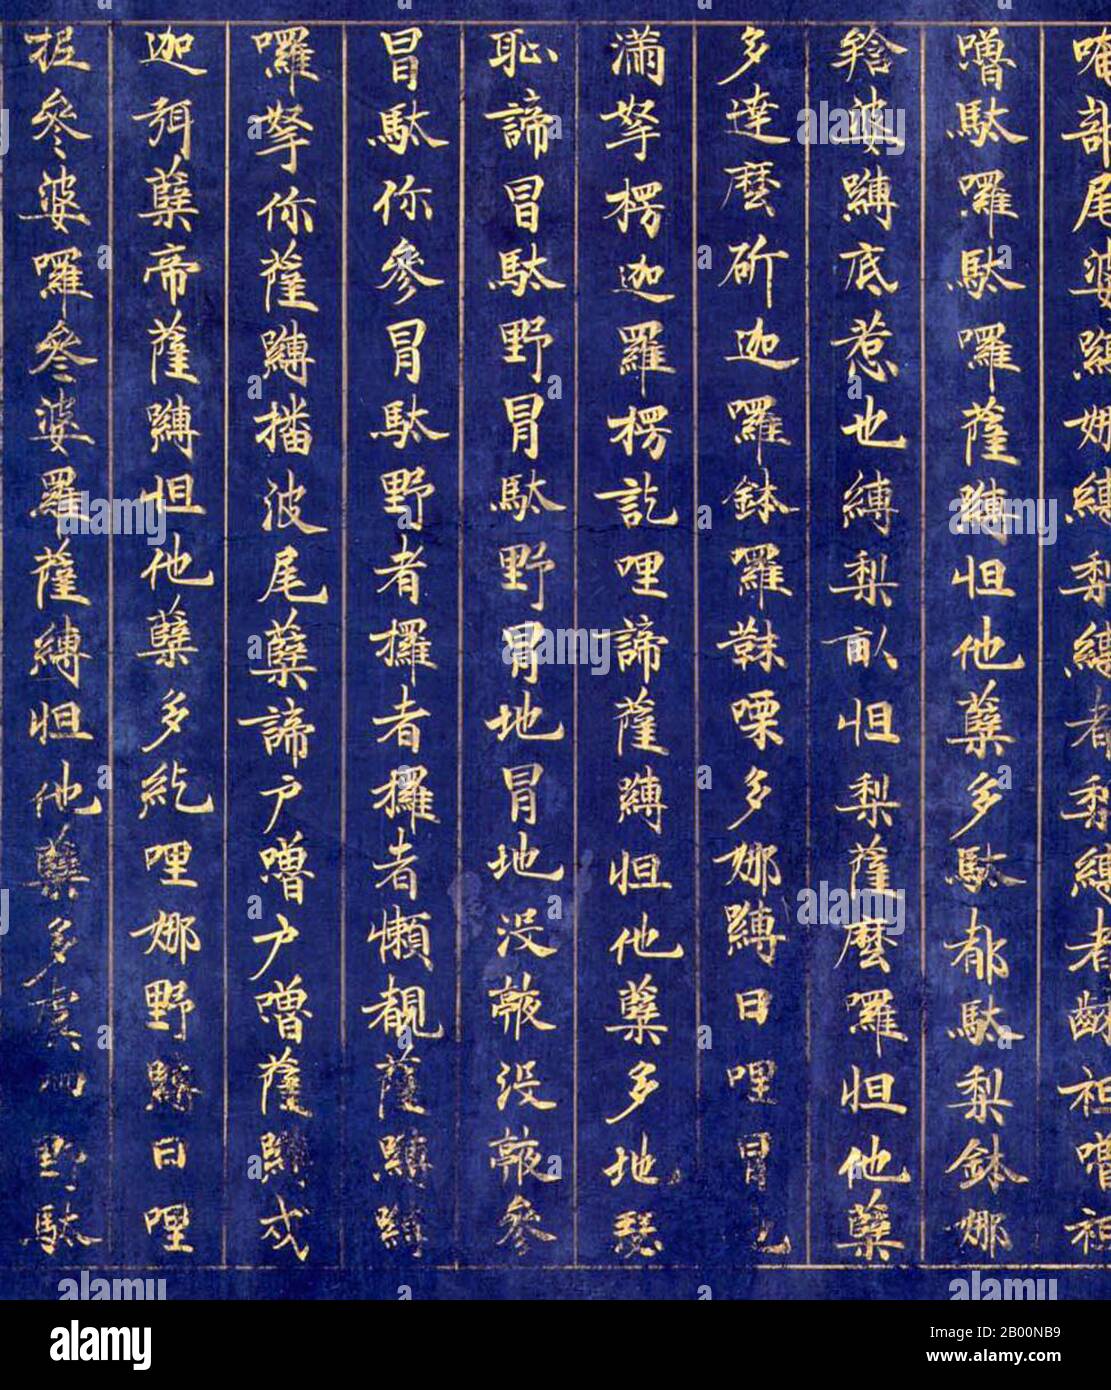 Japon: Script chinois (Kanji). Maha Prajna Paramita Sutra, Kamakura, Xe-XIe siècle ce. Les Kanji sont les caractères chinois traditionnels logographiques utilisés dans le système d'écriture japonais moderne avec l'hiragana, le katakana, les chiffres indo-arabes et l'utilisation occasionnelle de l'alphabet latin. Le terme japonais « kanji » signifie littéralement « caractères Han » ou « caractères chinois » et est le même terme écrit utilisé en chinois pour désigner le système d'écriture de caractères. Le Mahaprajnaparamita Sutra était une collection encyclopédique de textes de Prajnaparamita, généralement attribuée à Nagarjuna. Banque D'Images